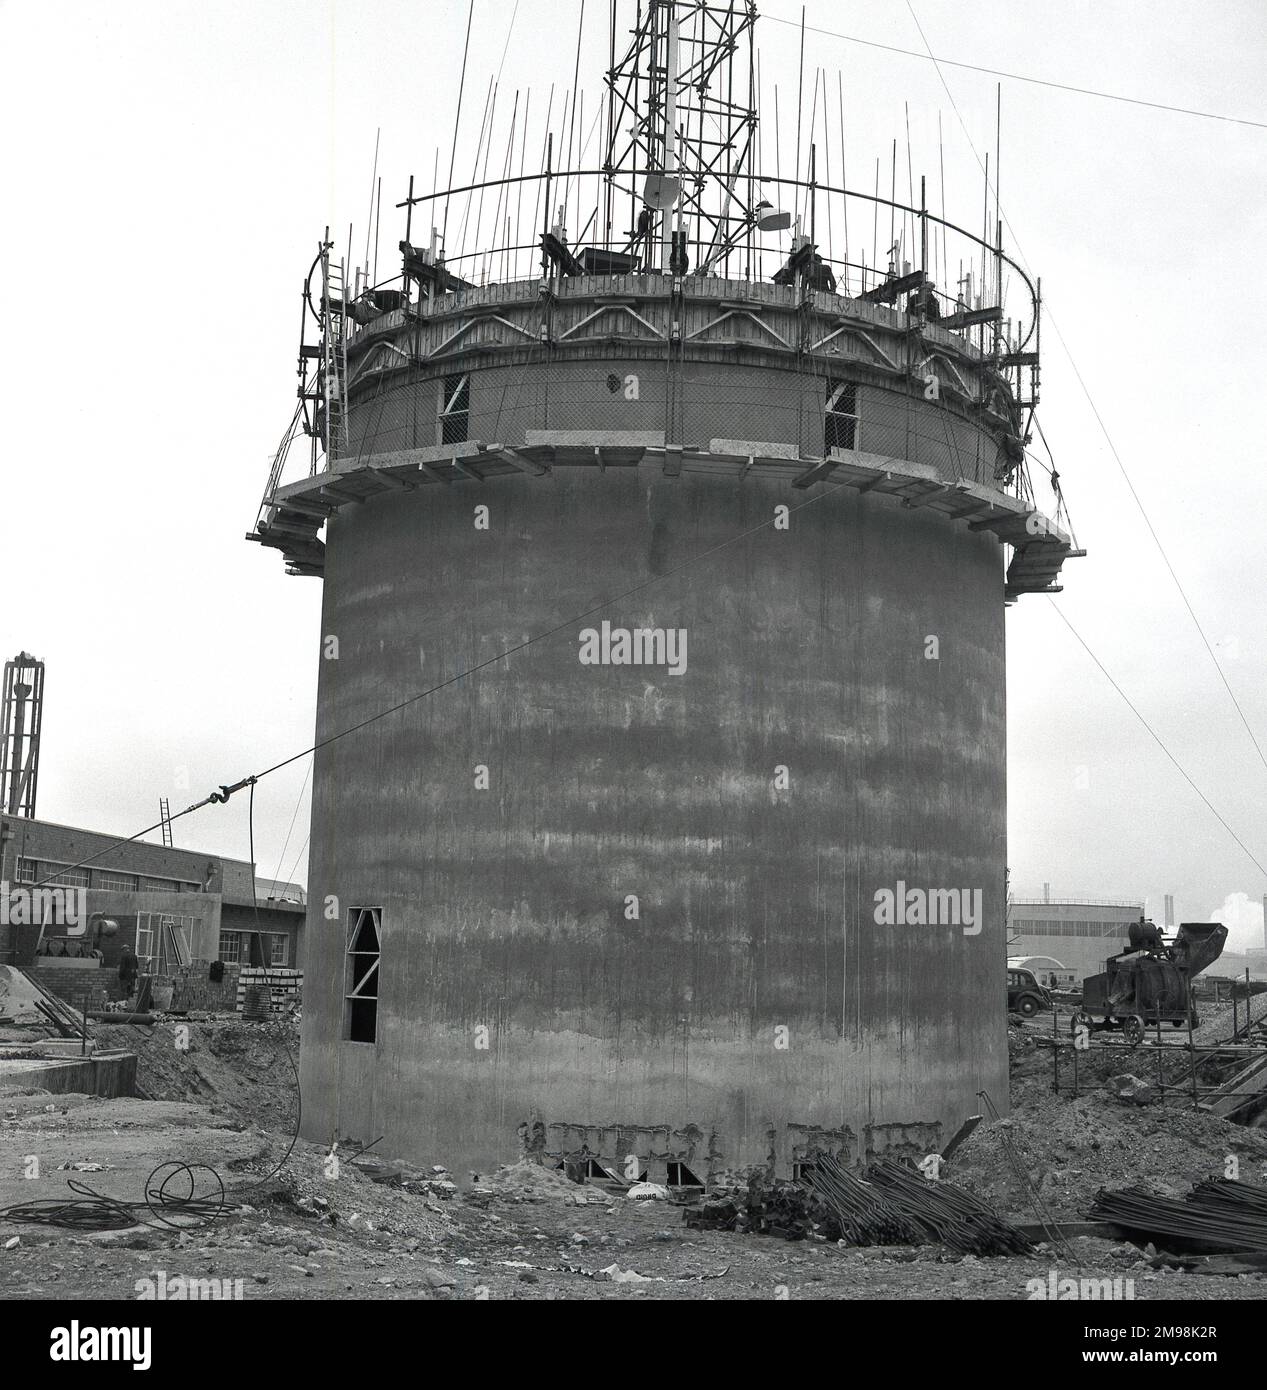 1950s, historique, une tour circulaire en béton renforcée de tiges d'acier en cours de construction aux steelwoks d'Abbey Works à Port Talbot, au sud du pays de Galles, au Royaume-Uni, la maison de la Compagnie de l'acier du pays de Galles (Scow). L'utilisation de barres d'acier avec du béton donne à la structure en cours de construction une plus grande résistance et flexibilité que le béton seul. Le site de Port Talbot, dans le sud du pays de Galles, s'étendrait au cours de la décennie pour devenir en 1960s, le plus grand complexe sidérurgique d'Europe. Banque D'Images